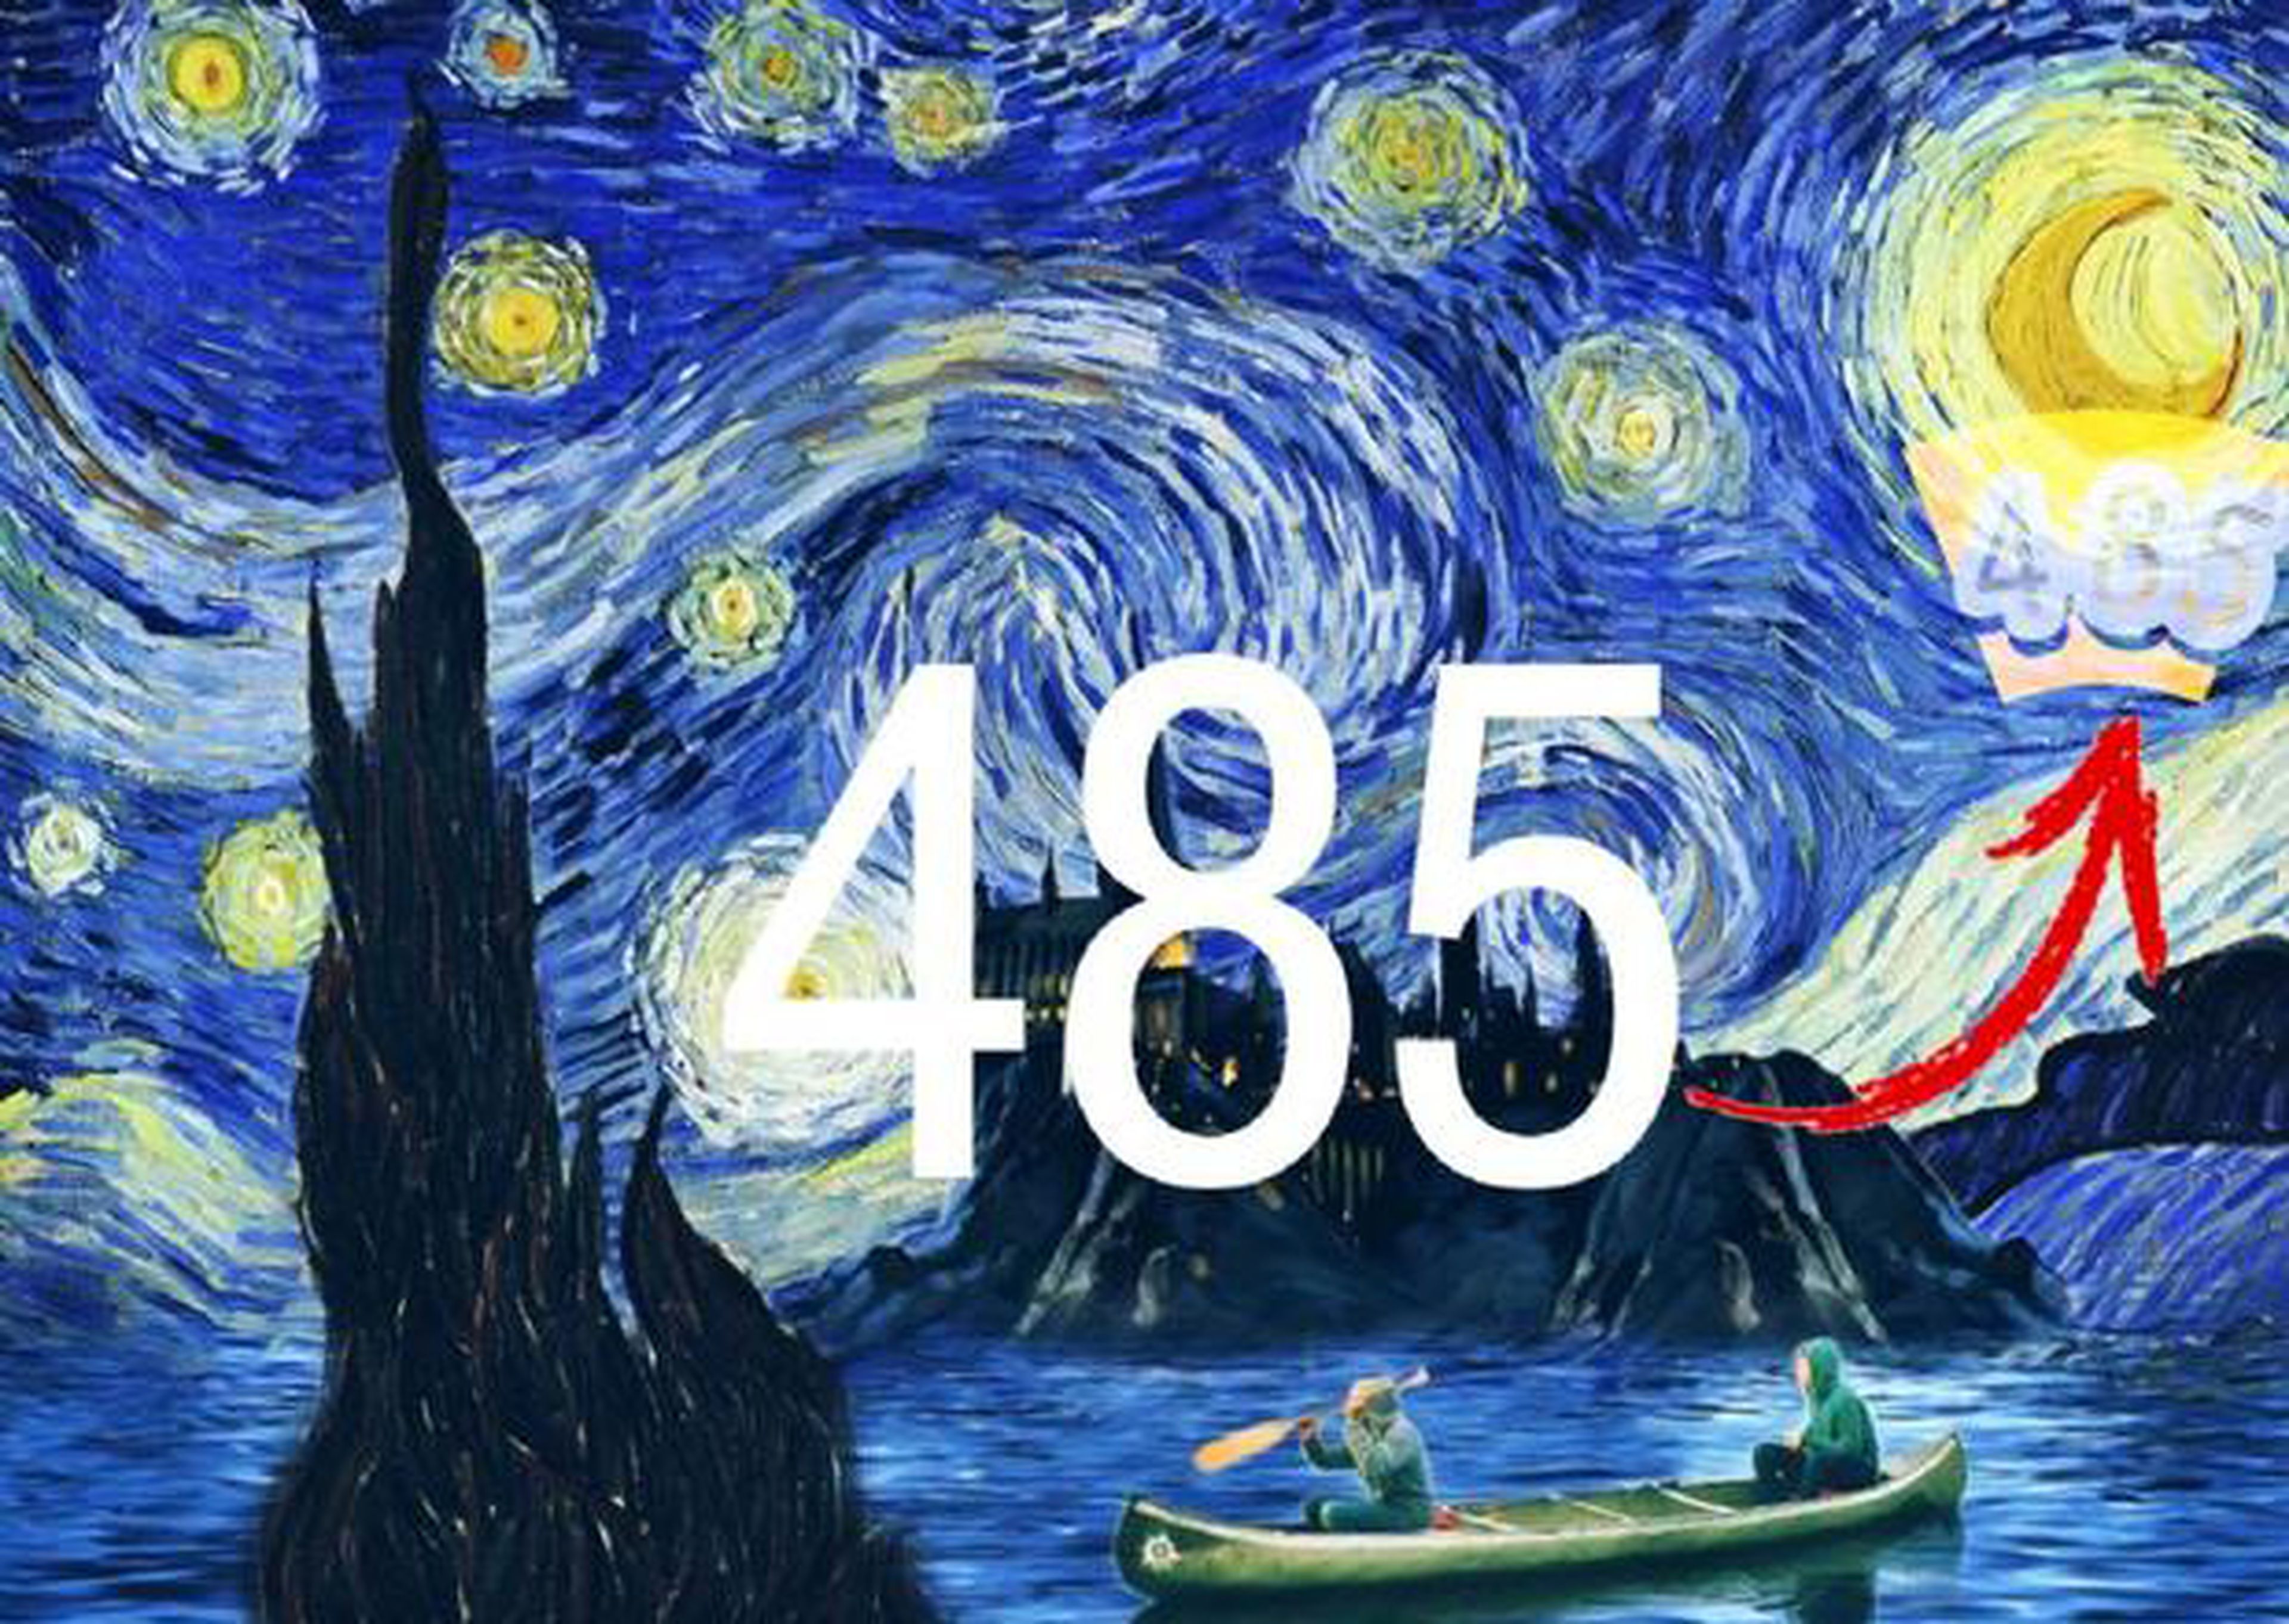 Reto visual encuentra el número en la pintura de Van Gogh